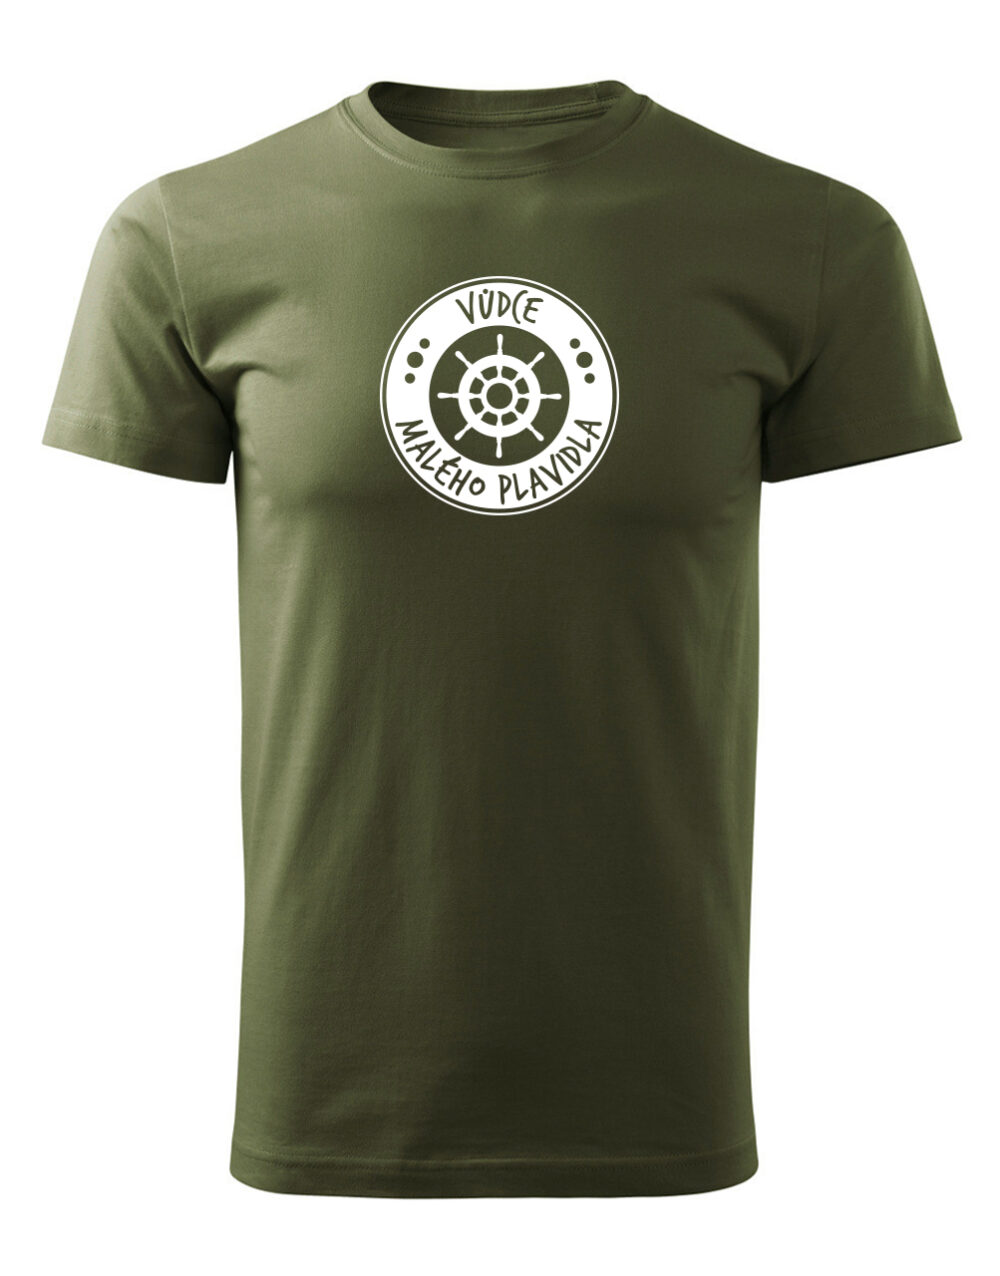 Pánské tričko s potiskem Vůdce malého plavidla vojenská zelená